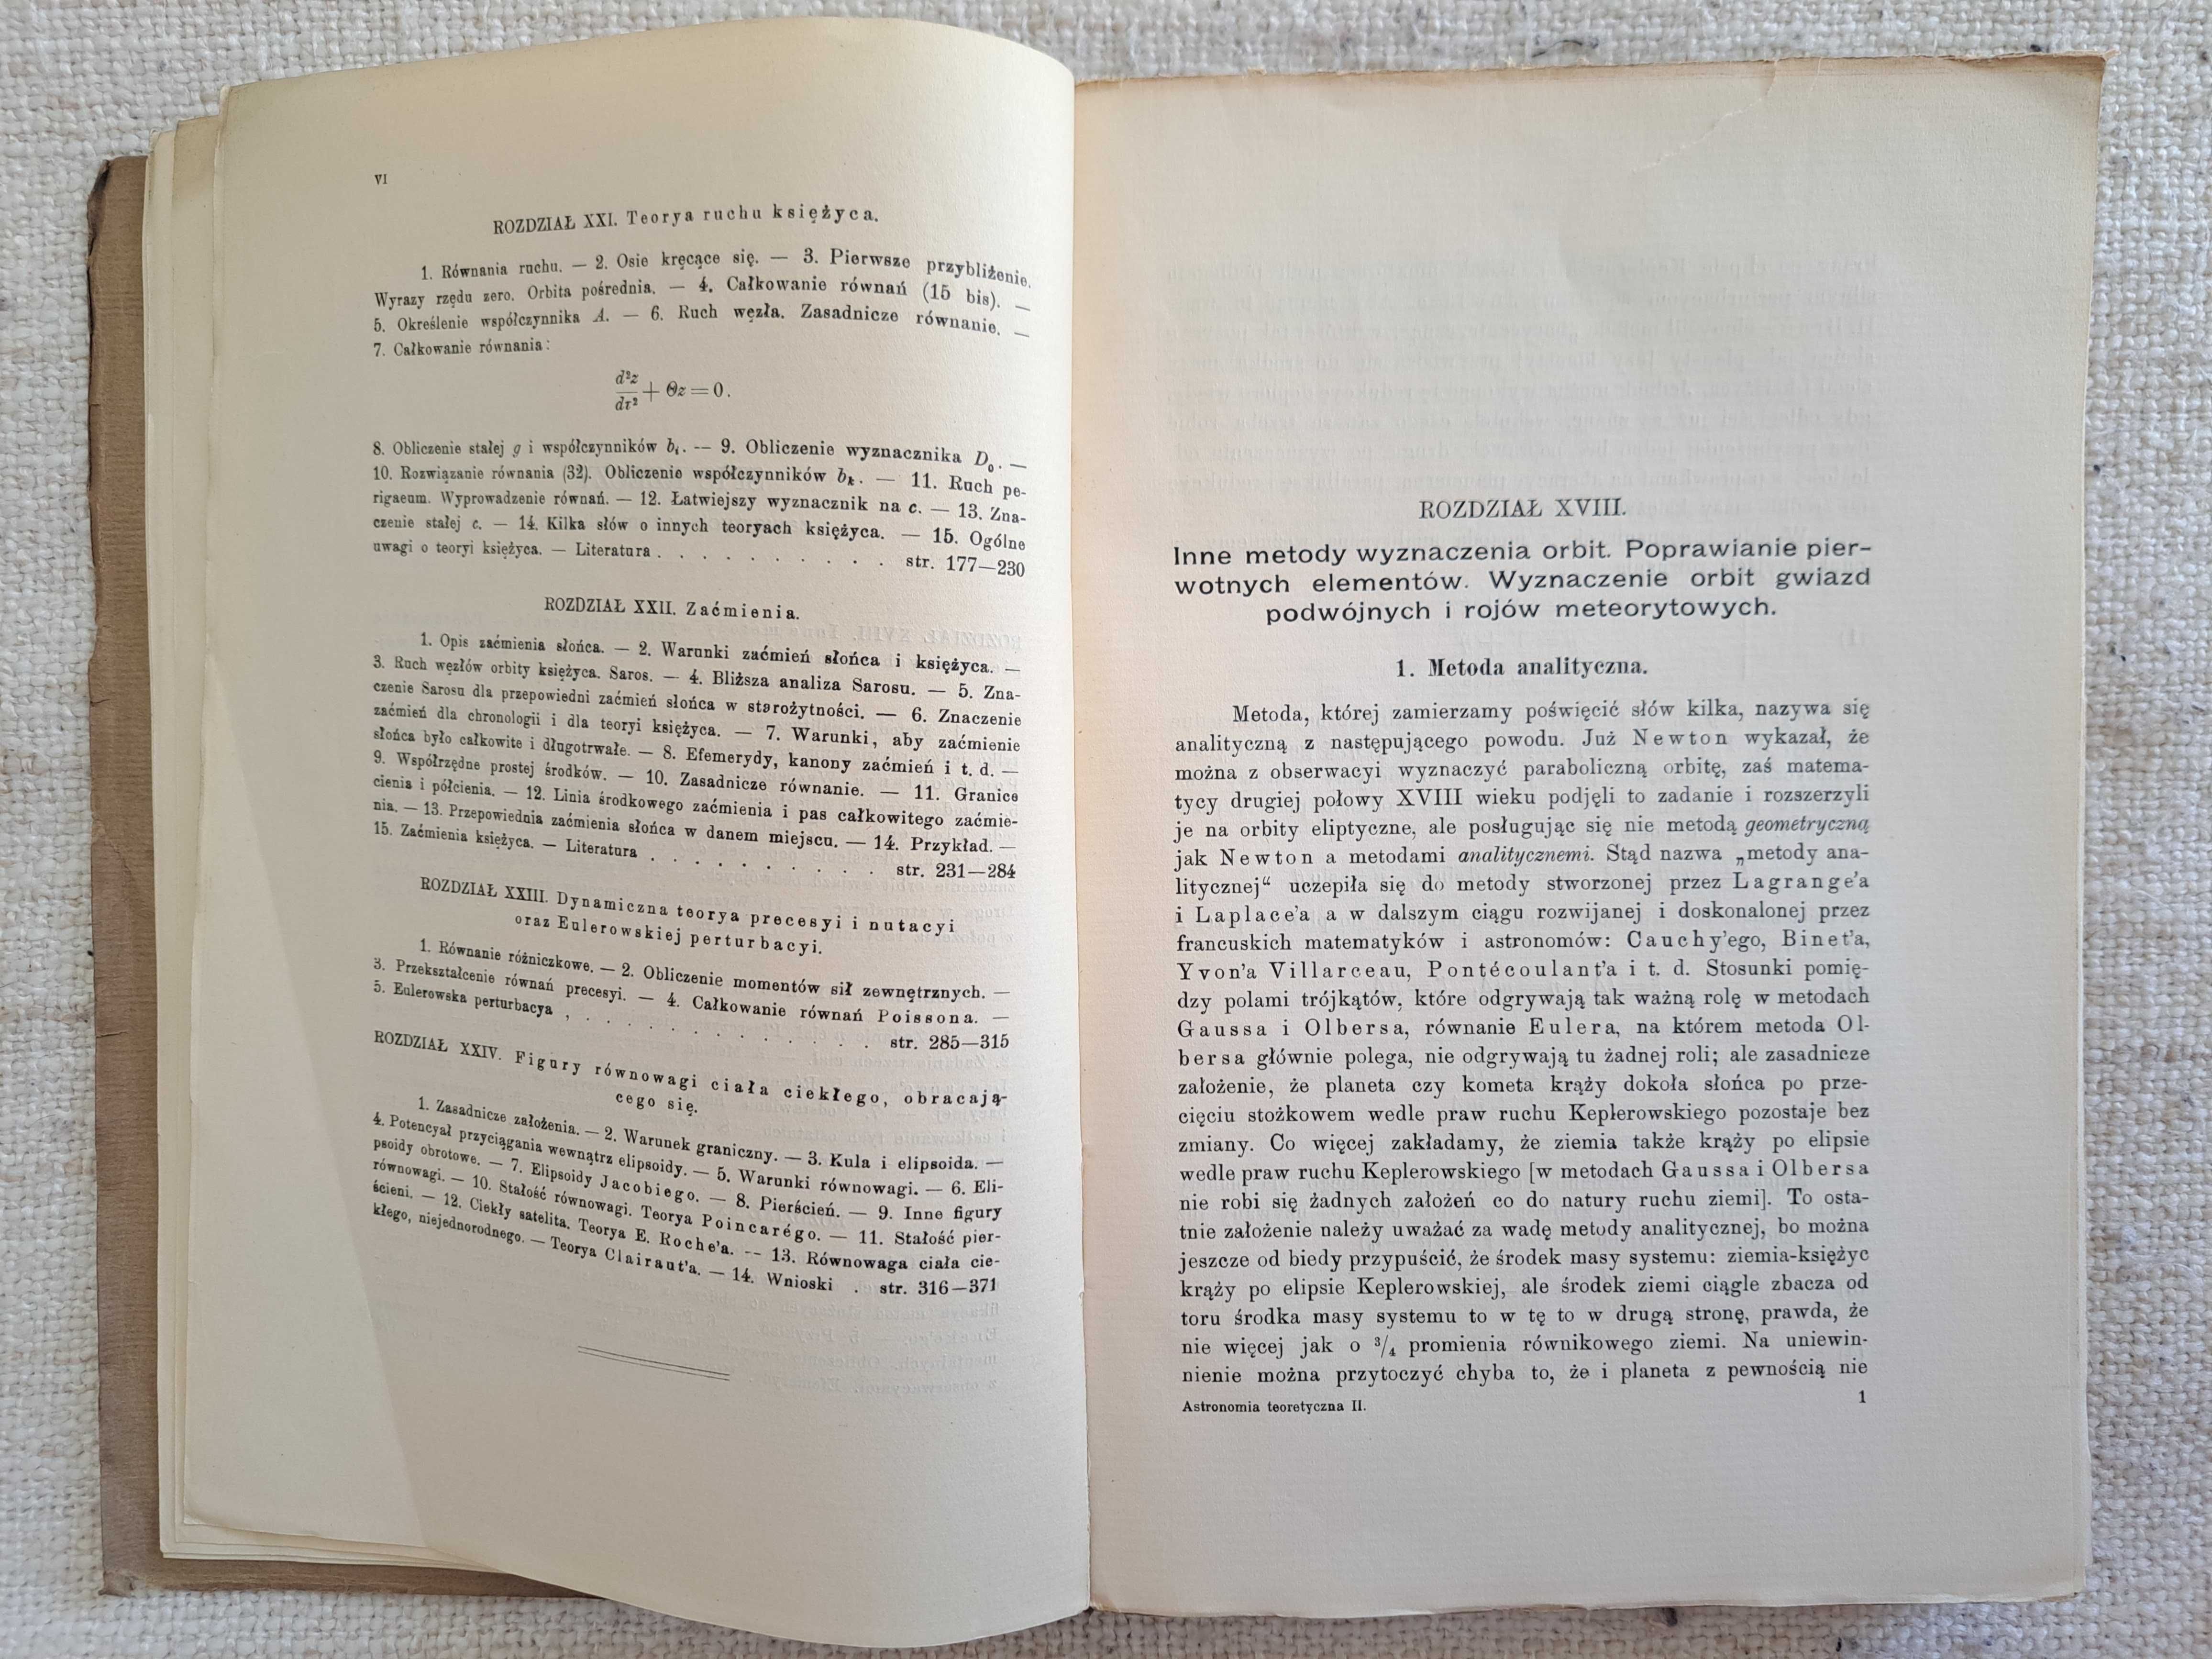 1914 rok. Astronomia Teoretyczna. Maurycy Pius Rudzki